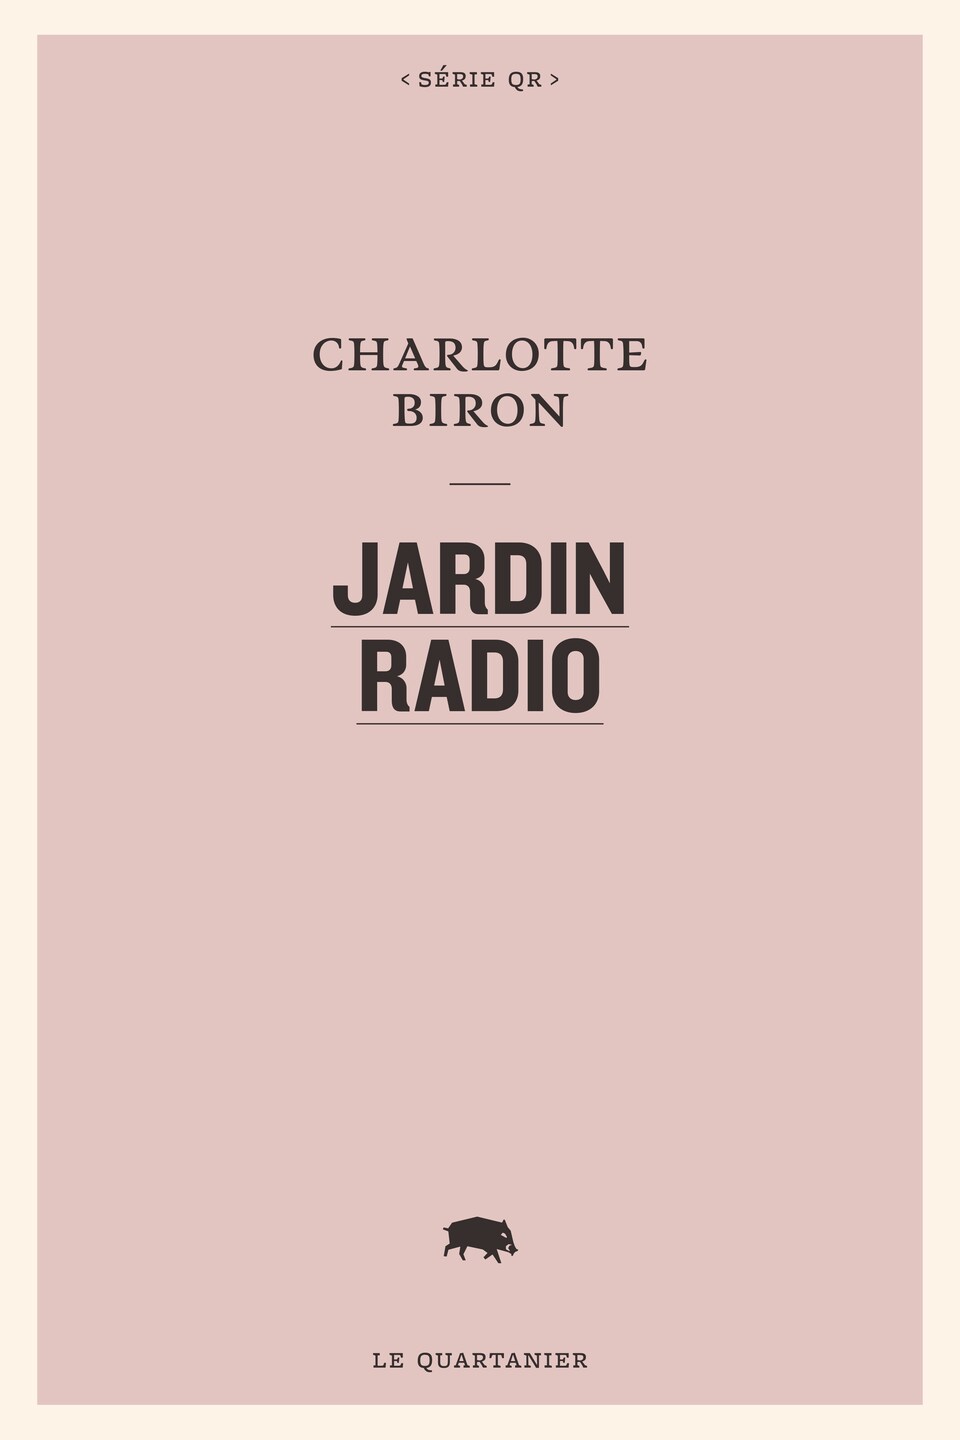 La page couverture du roman Jardin radio est rose et comprend le titre de l'œuvre et le nom de l'autrice.